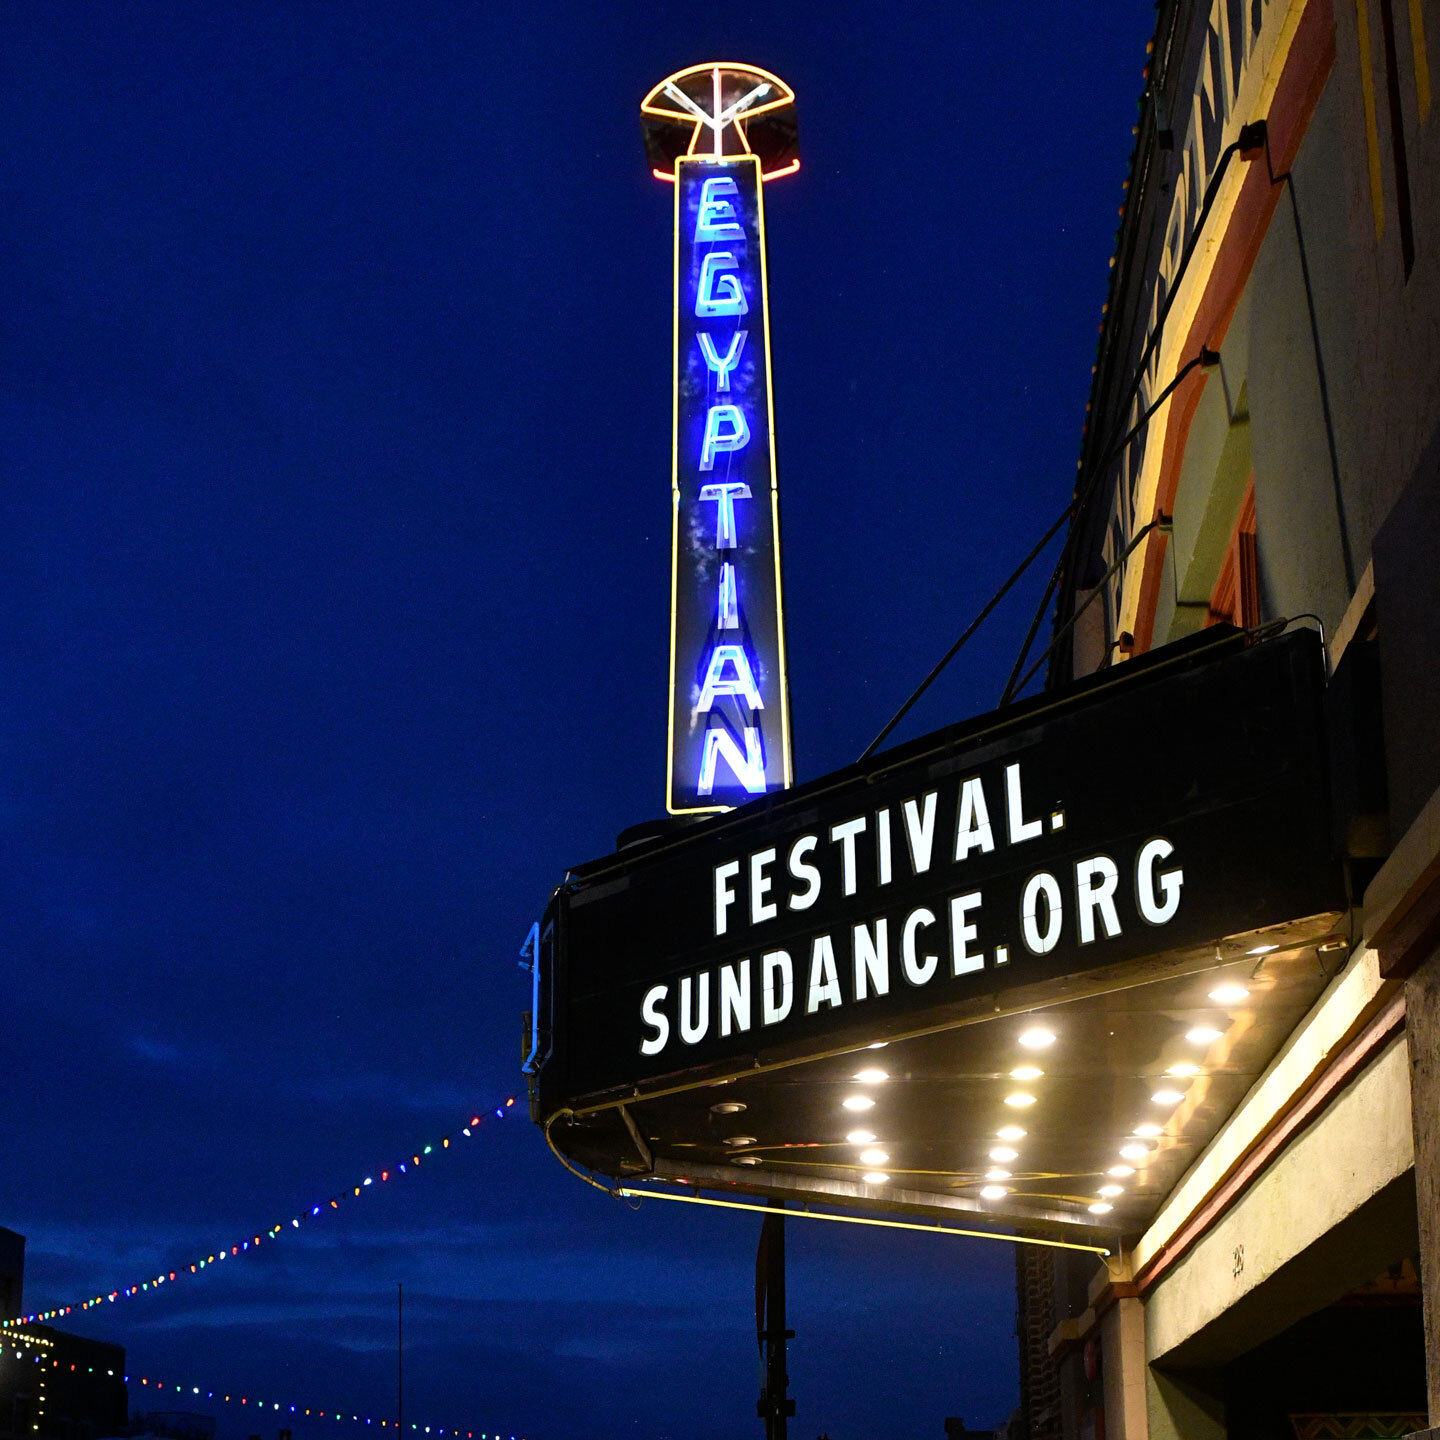 โรงภาพยนตร์ Egyptian ในเทศกาลภาพยนตร์ Sundance ที่มีข้อความ Festival.Sundance.Org อยู่บนป้ายหลังคาทางเข้า